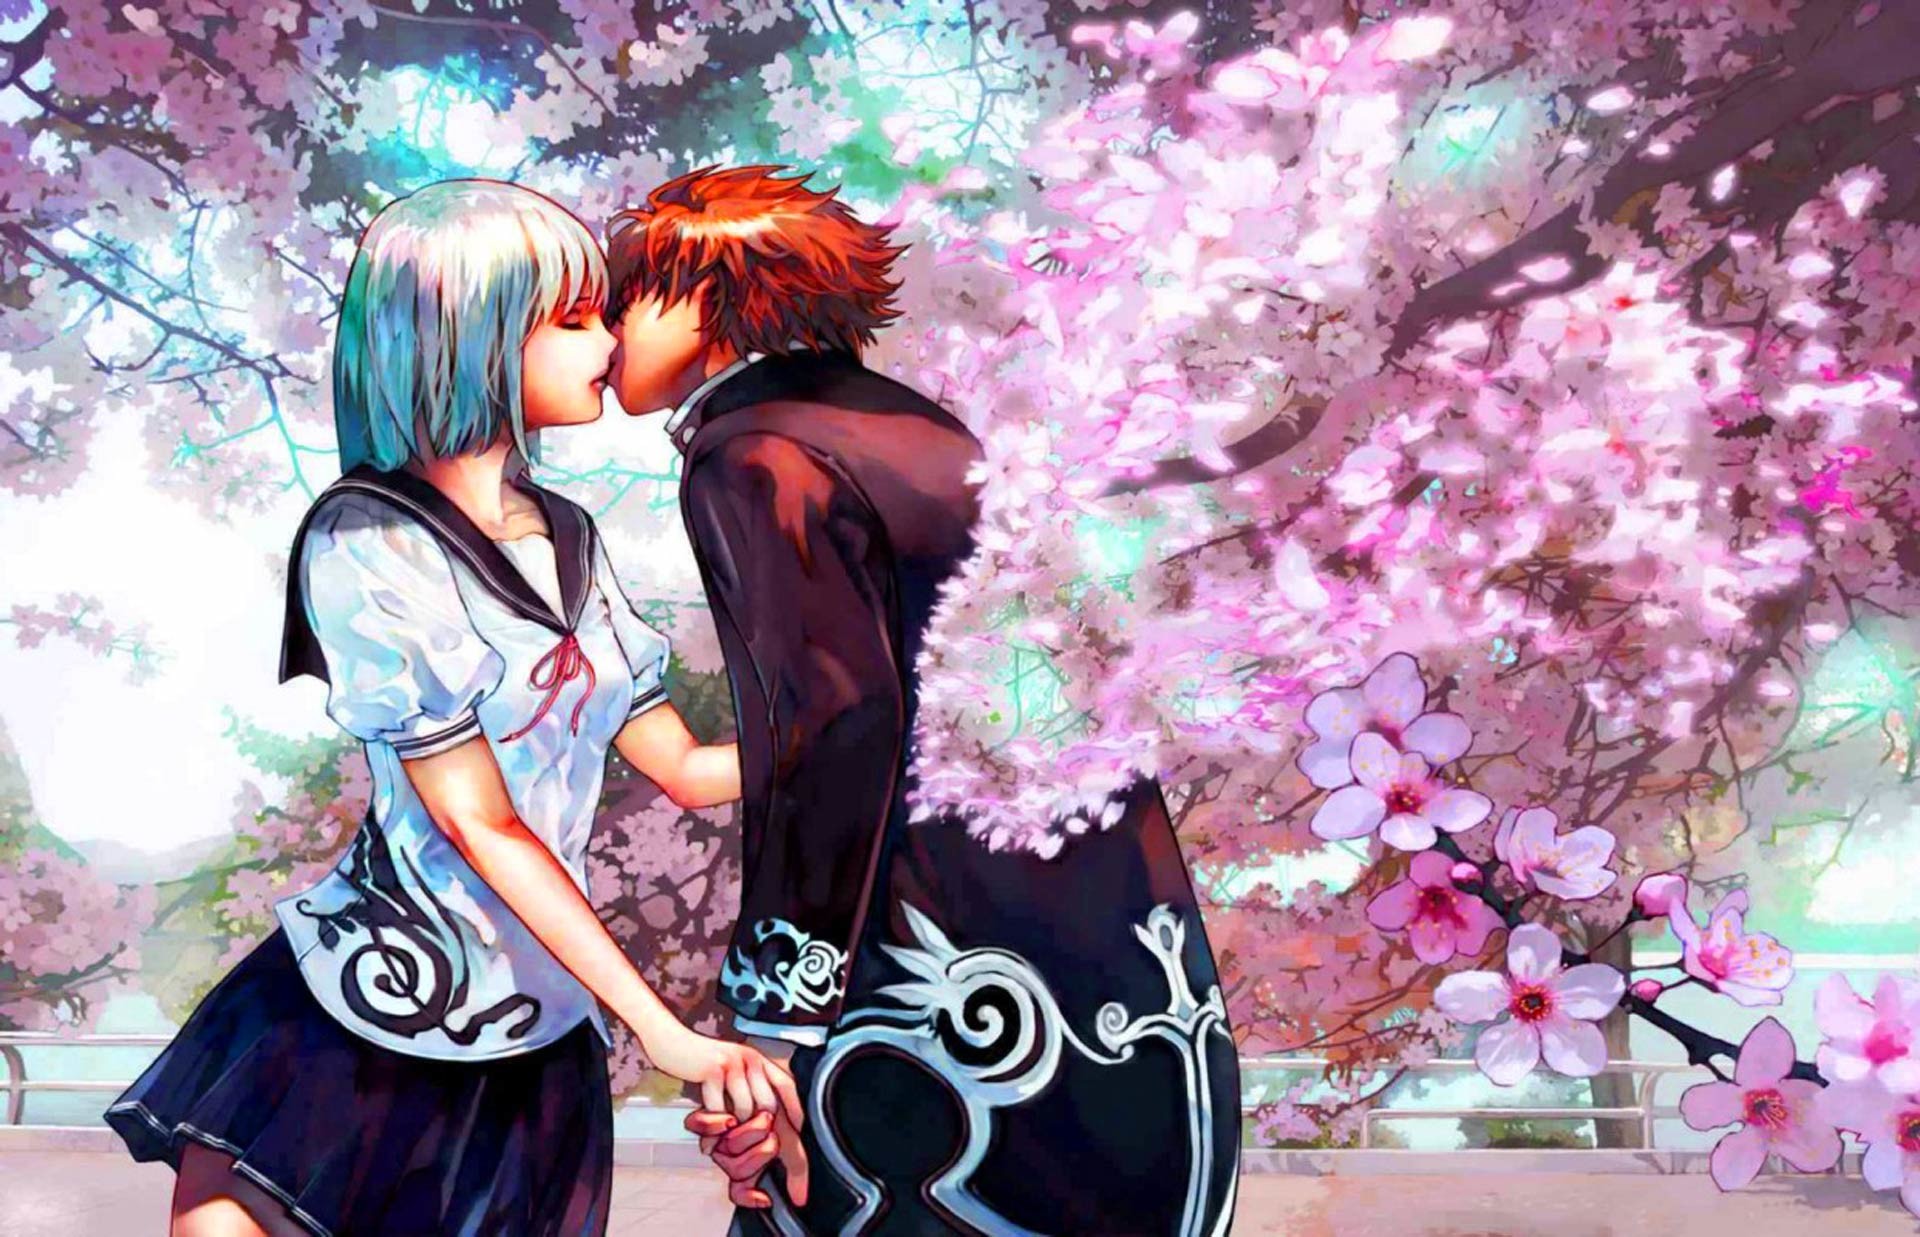 Wallpapers De Amor Anime – Wallpaper Gratis 5 HD Wallpapers